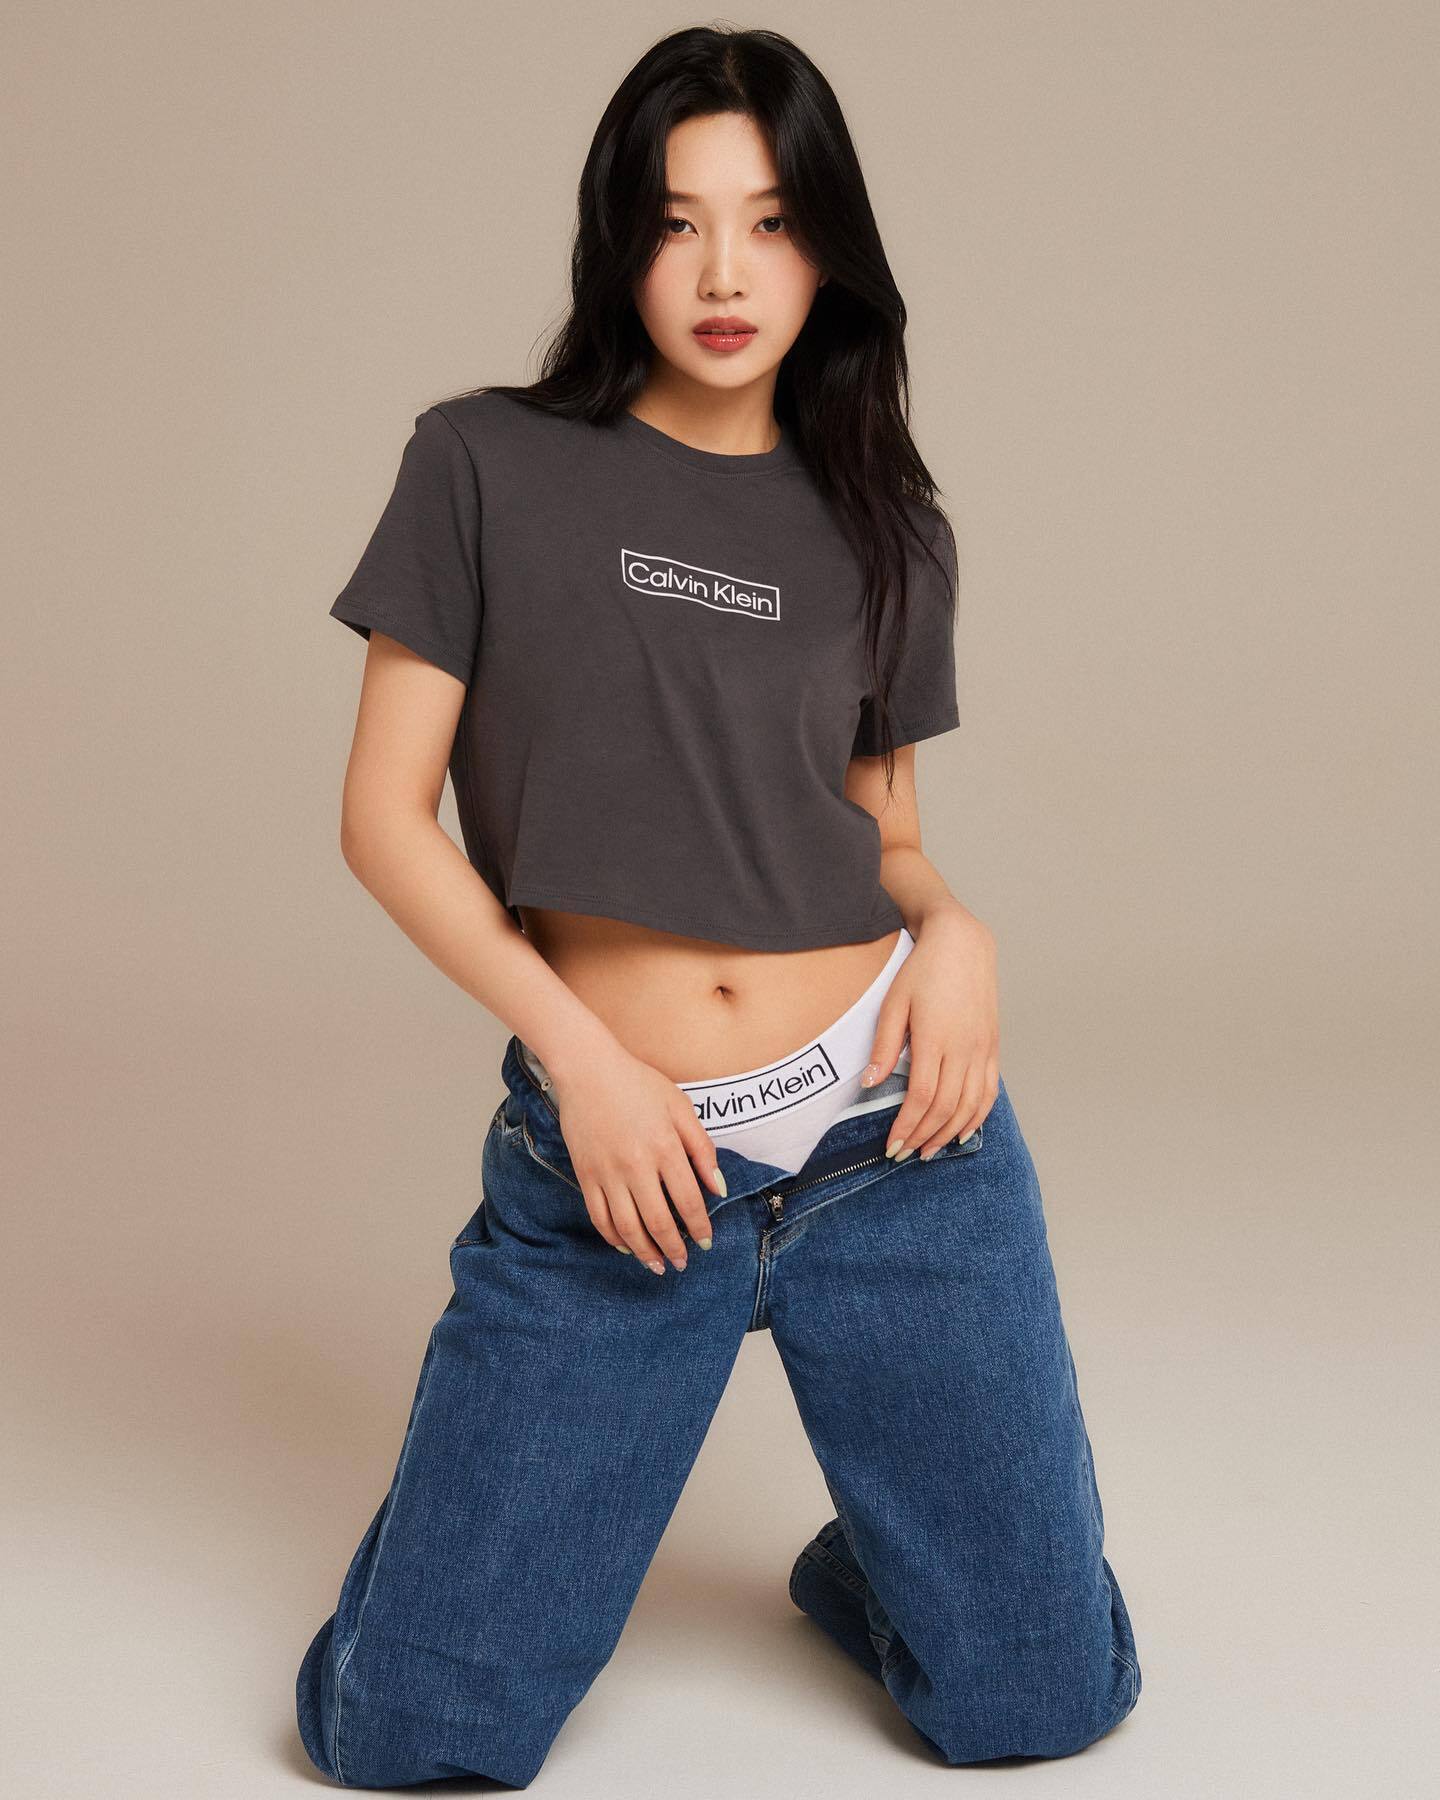 레드벨벳 조이(JOY) 켈빈클라인 속옷 광고 사진모음